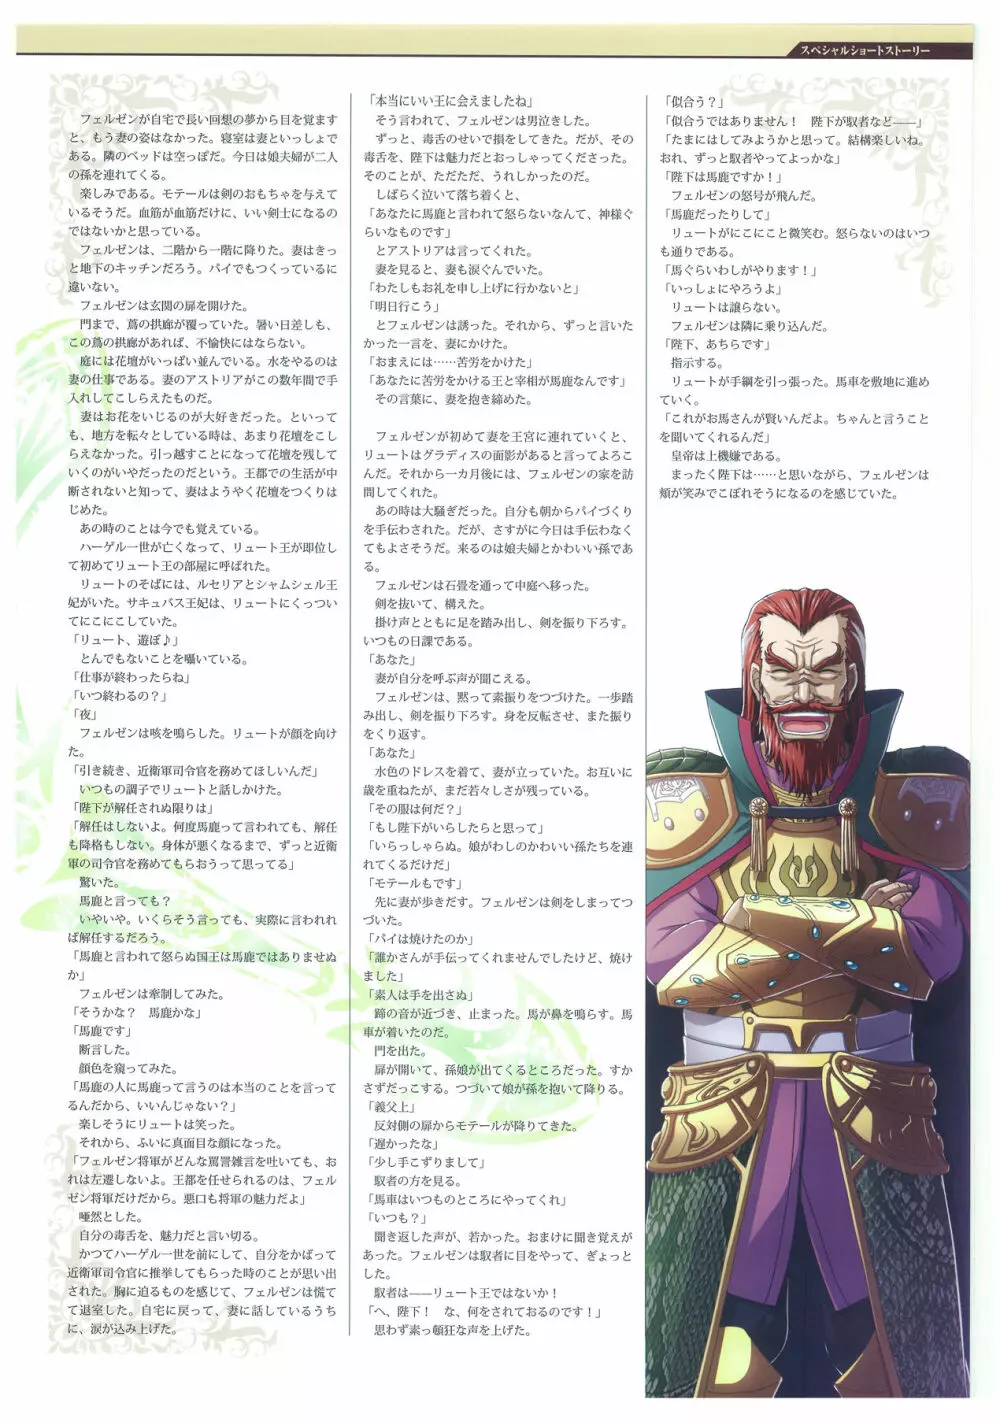 巨乳幻想 -巨乳ファンタジー コンプリート- 123ページ